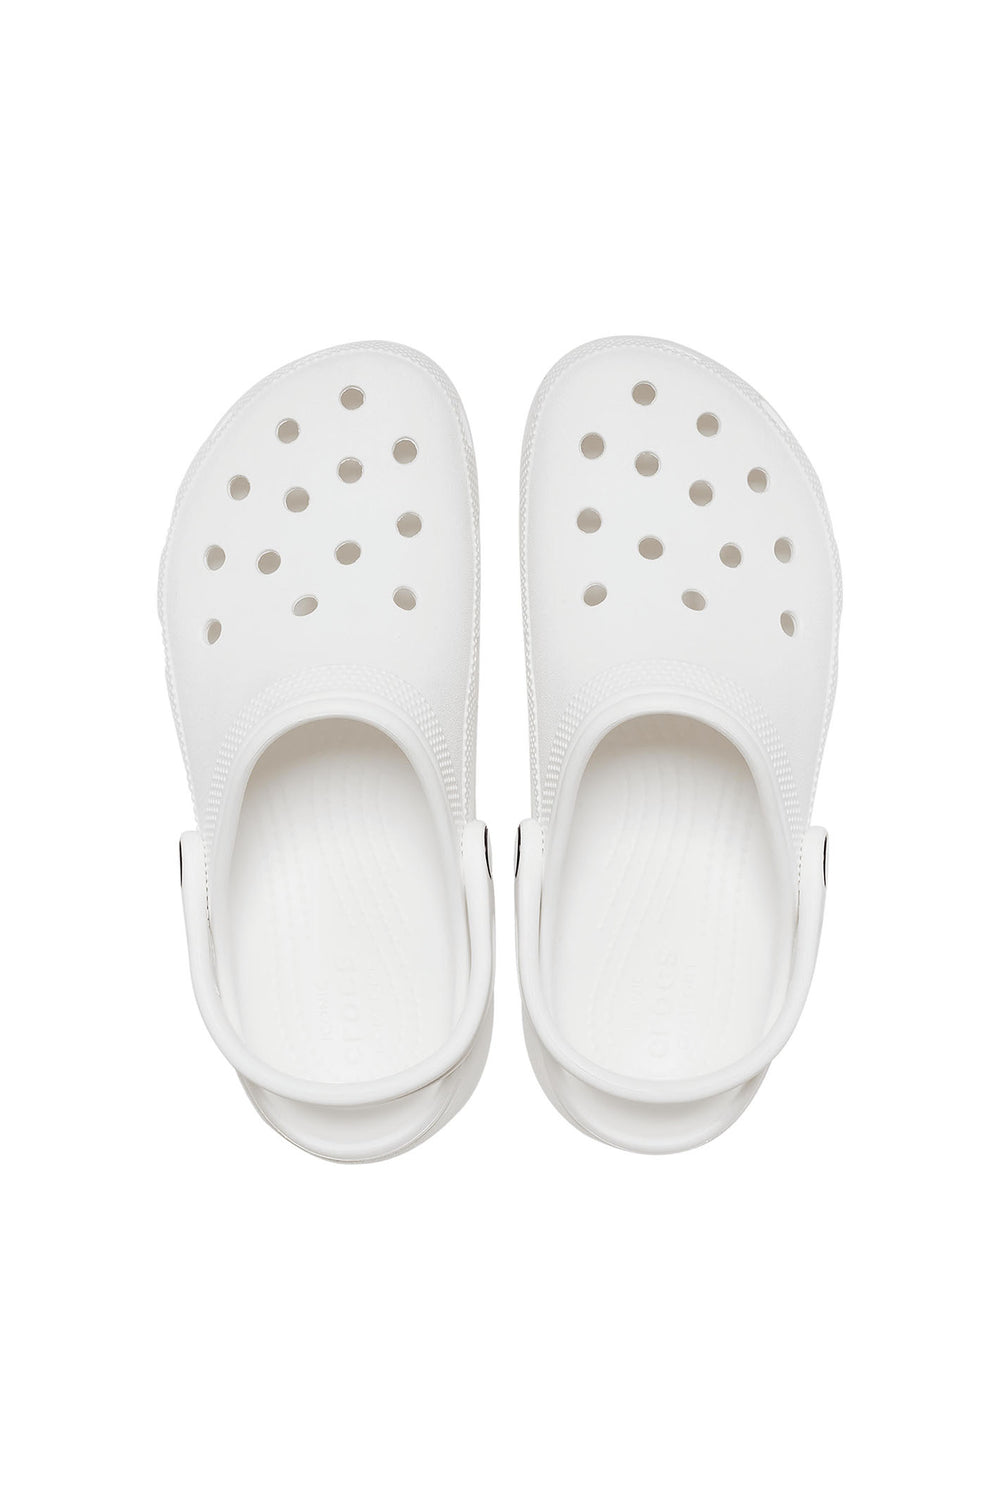 Crocs 206750 Classic Platform White Clog - Shirley Allum Boutique